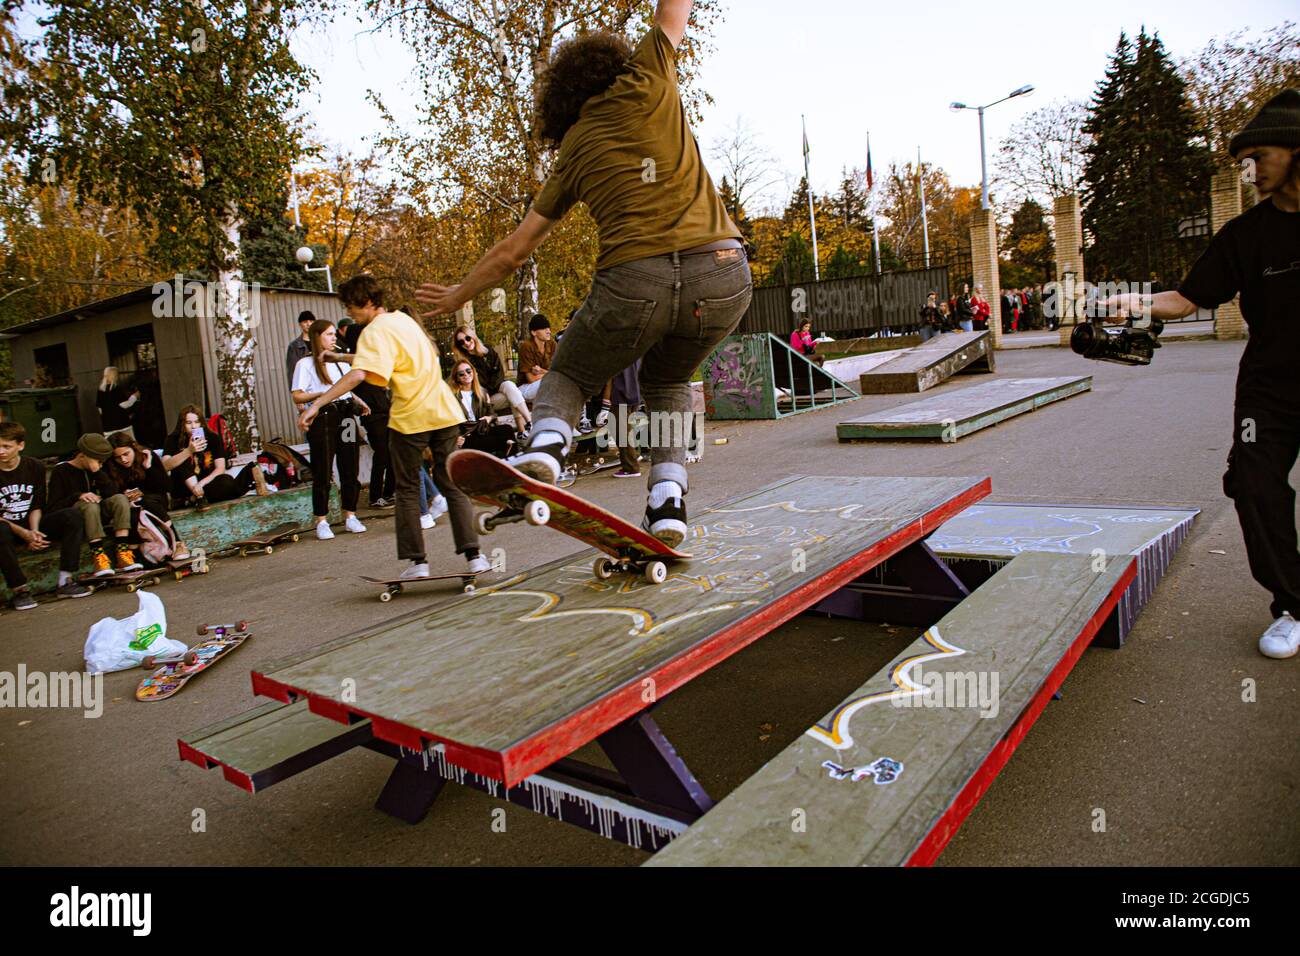 Un skateboarder en action au Venice Beach Skate Park à Los Angeles, Californie Banque D'Images